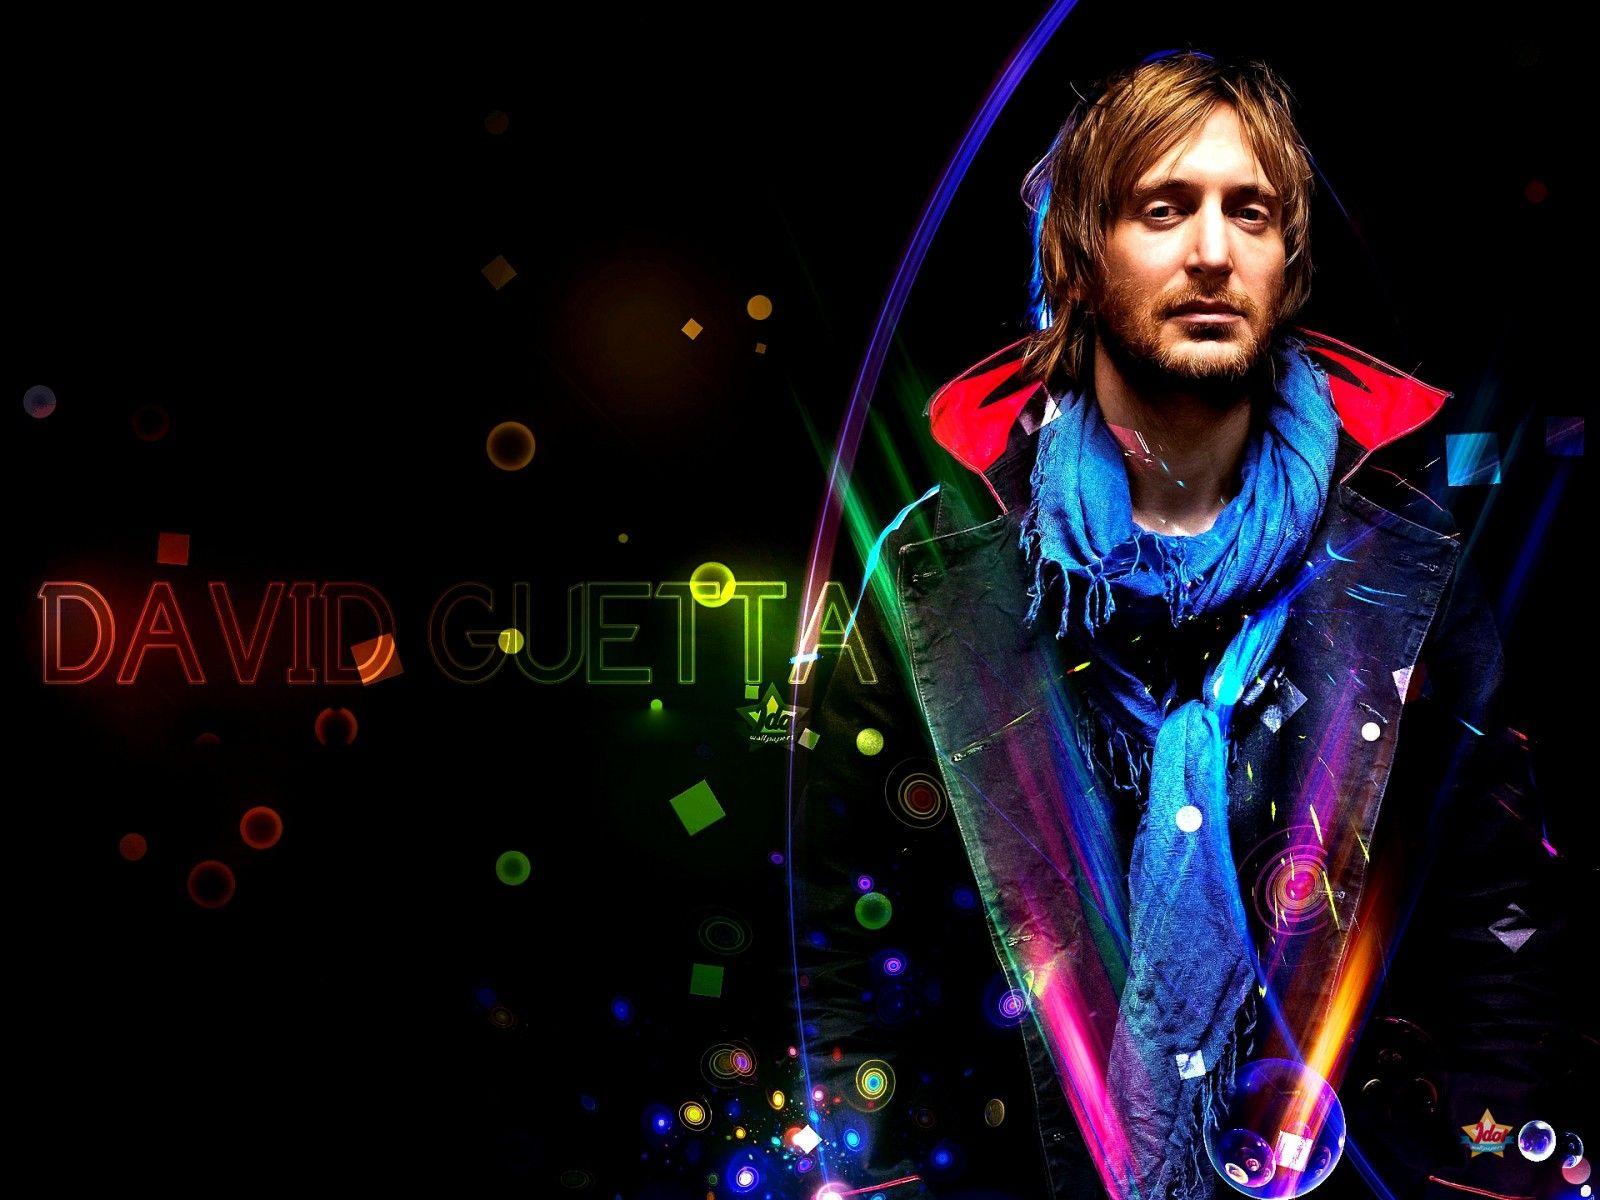 FUTURE RAVE ⚡ David Guetta & MORTEN - YouTube